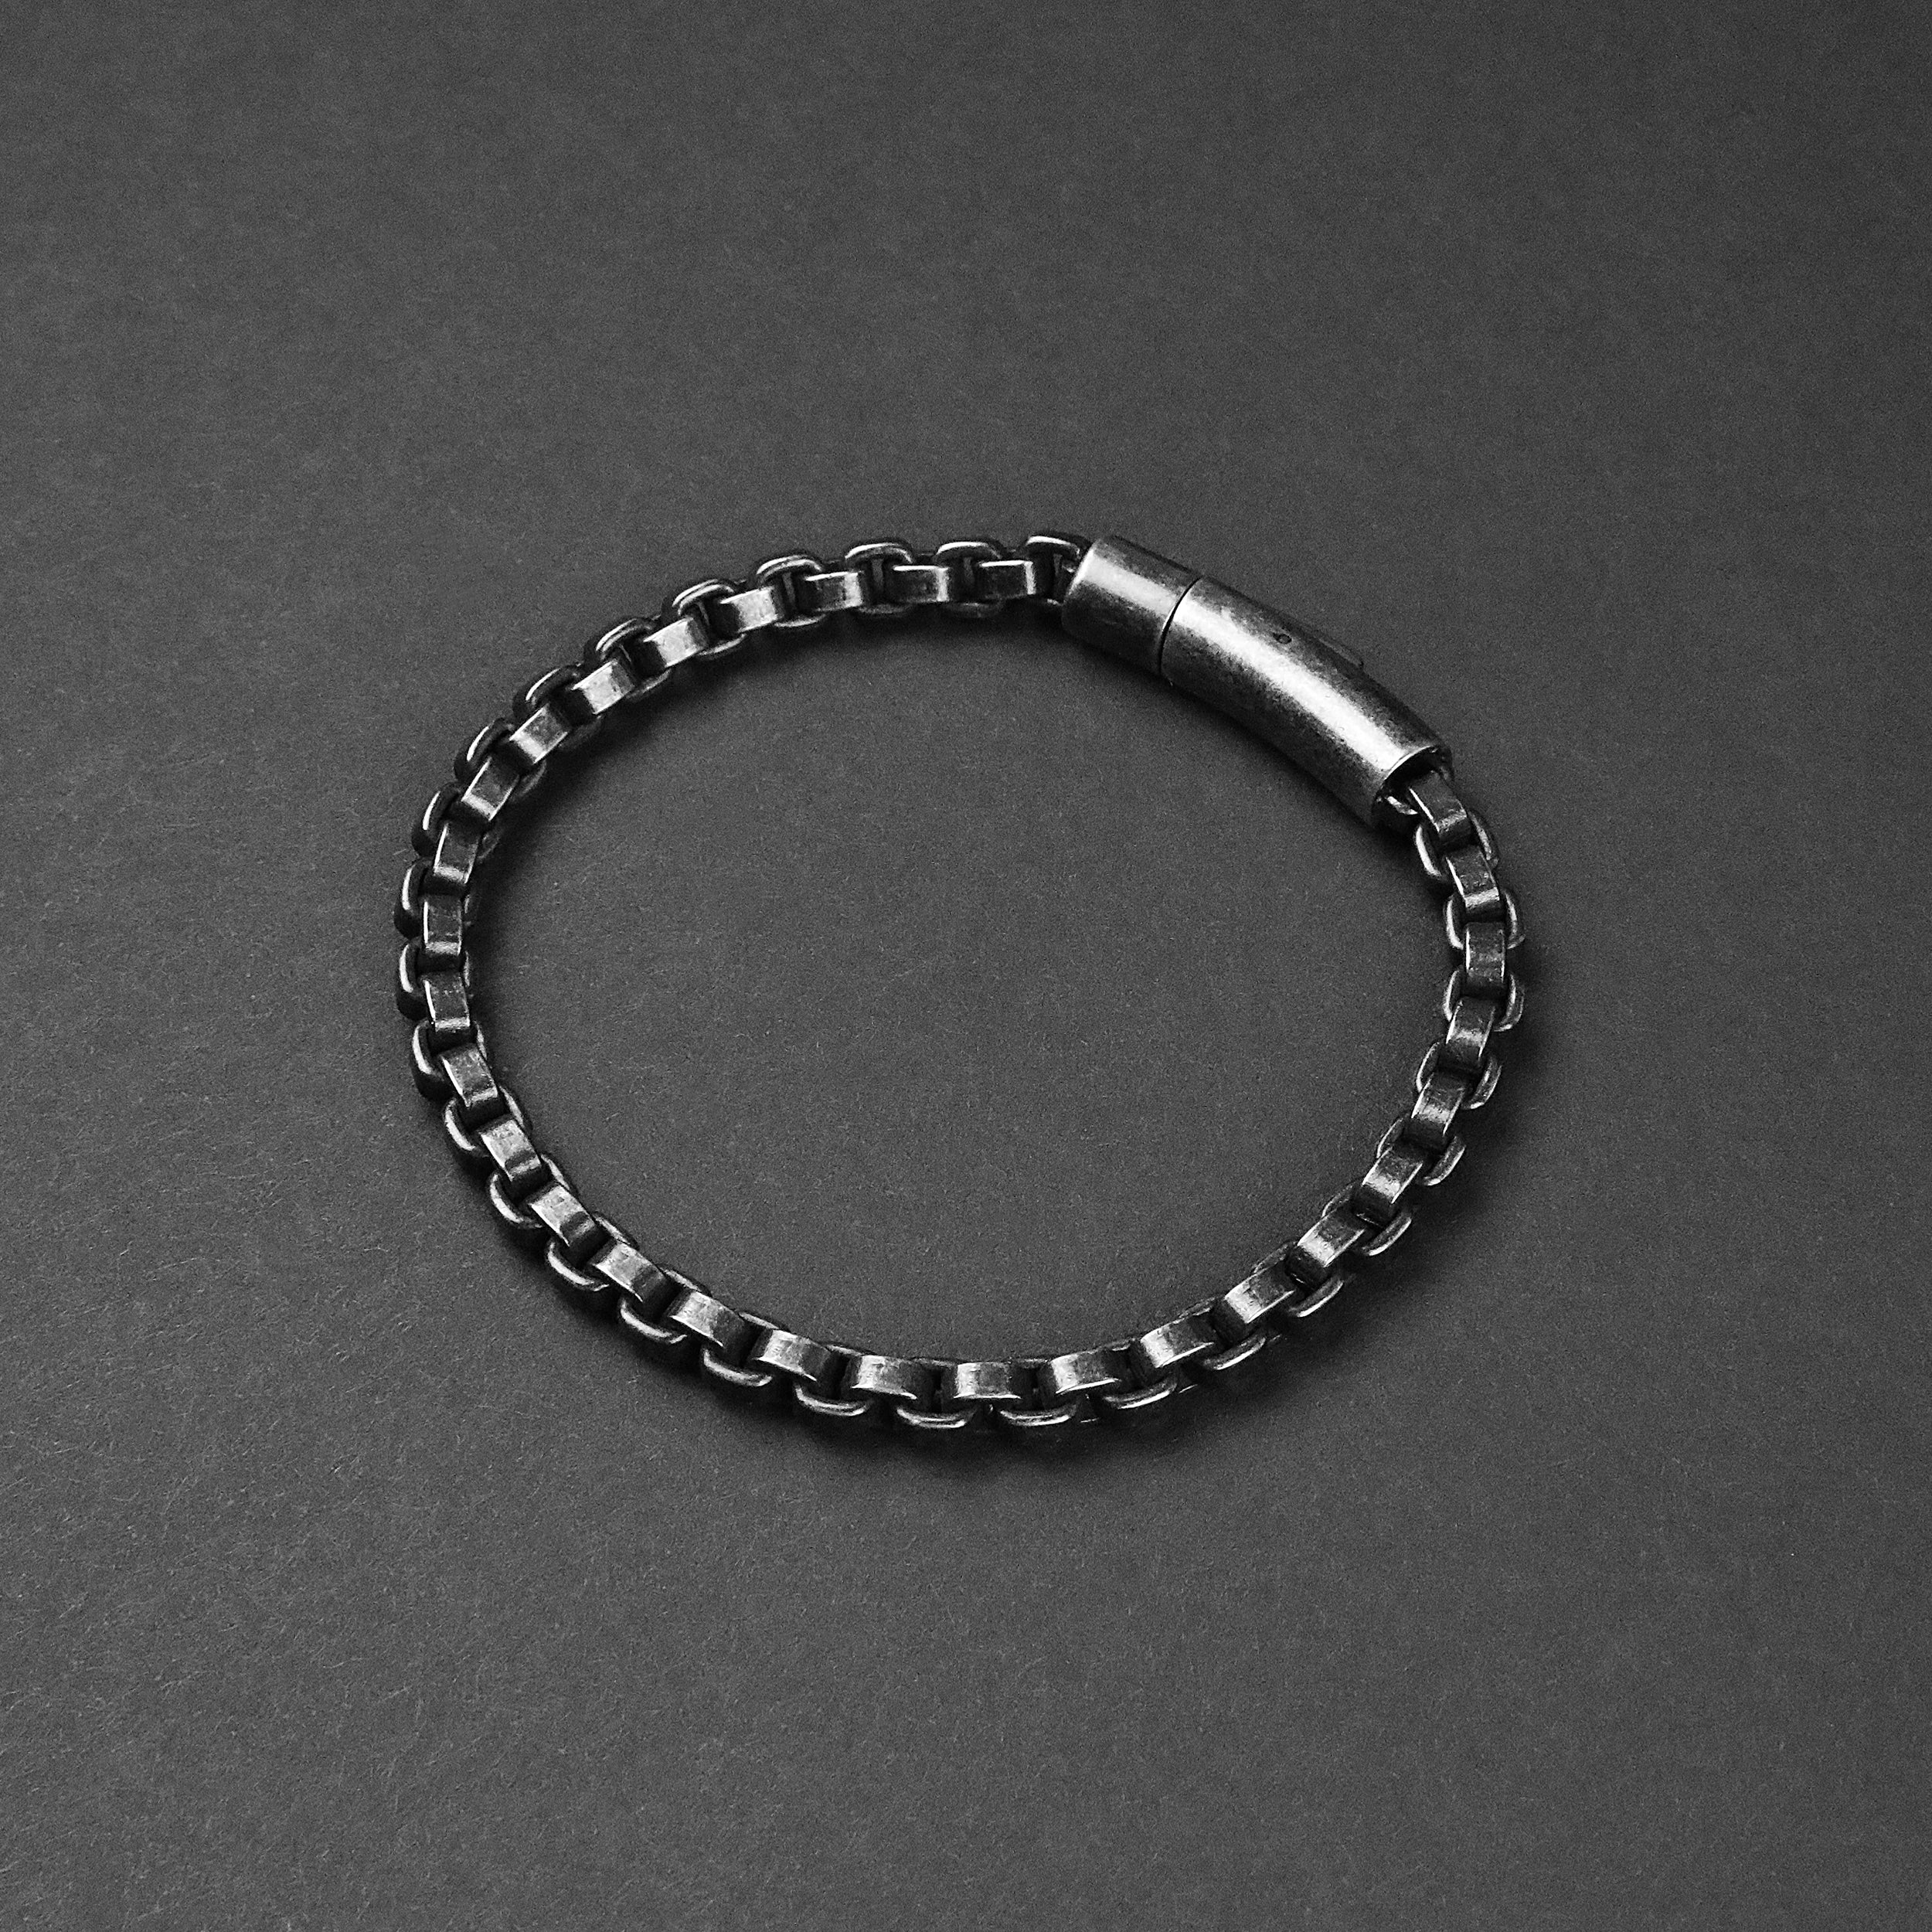 Box Chain Snap Bracelet - Antique Silver 5.5mm